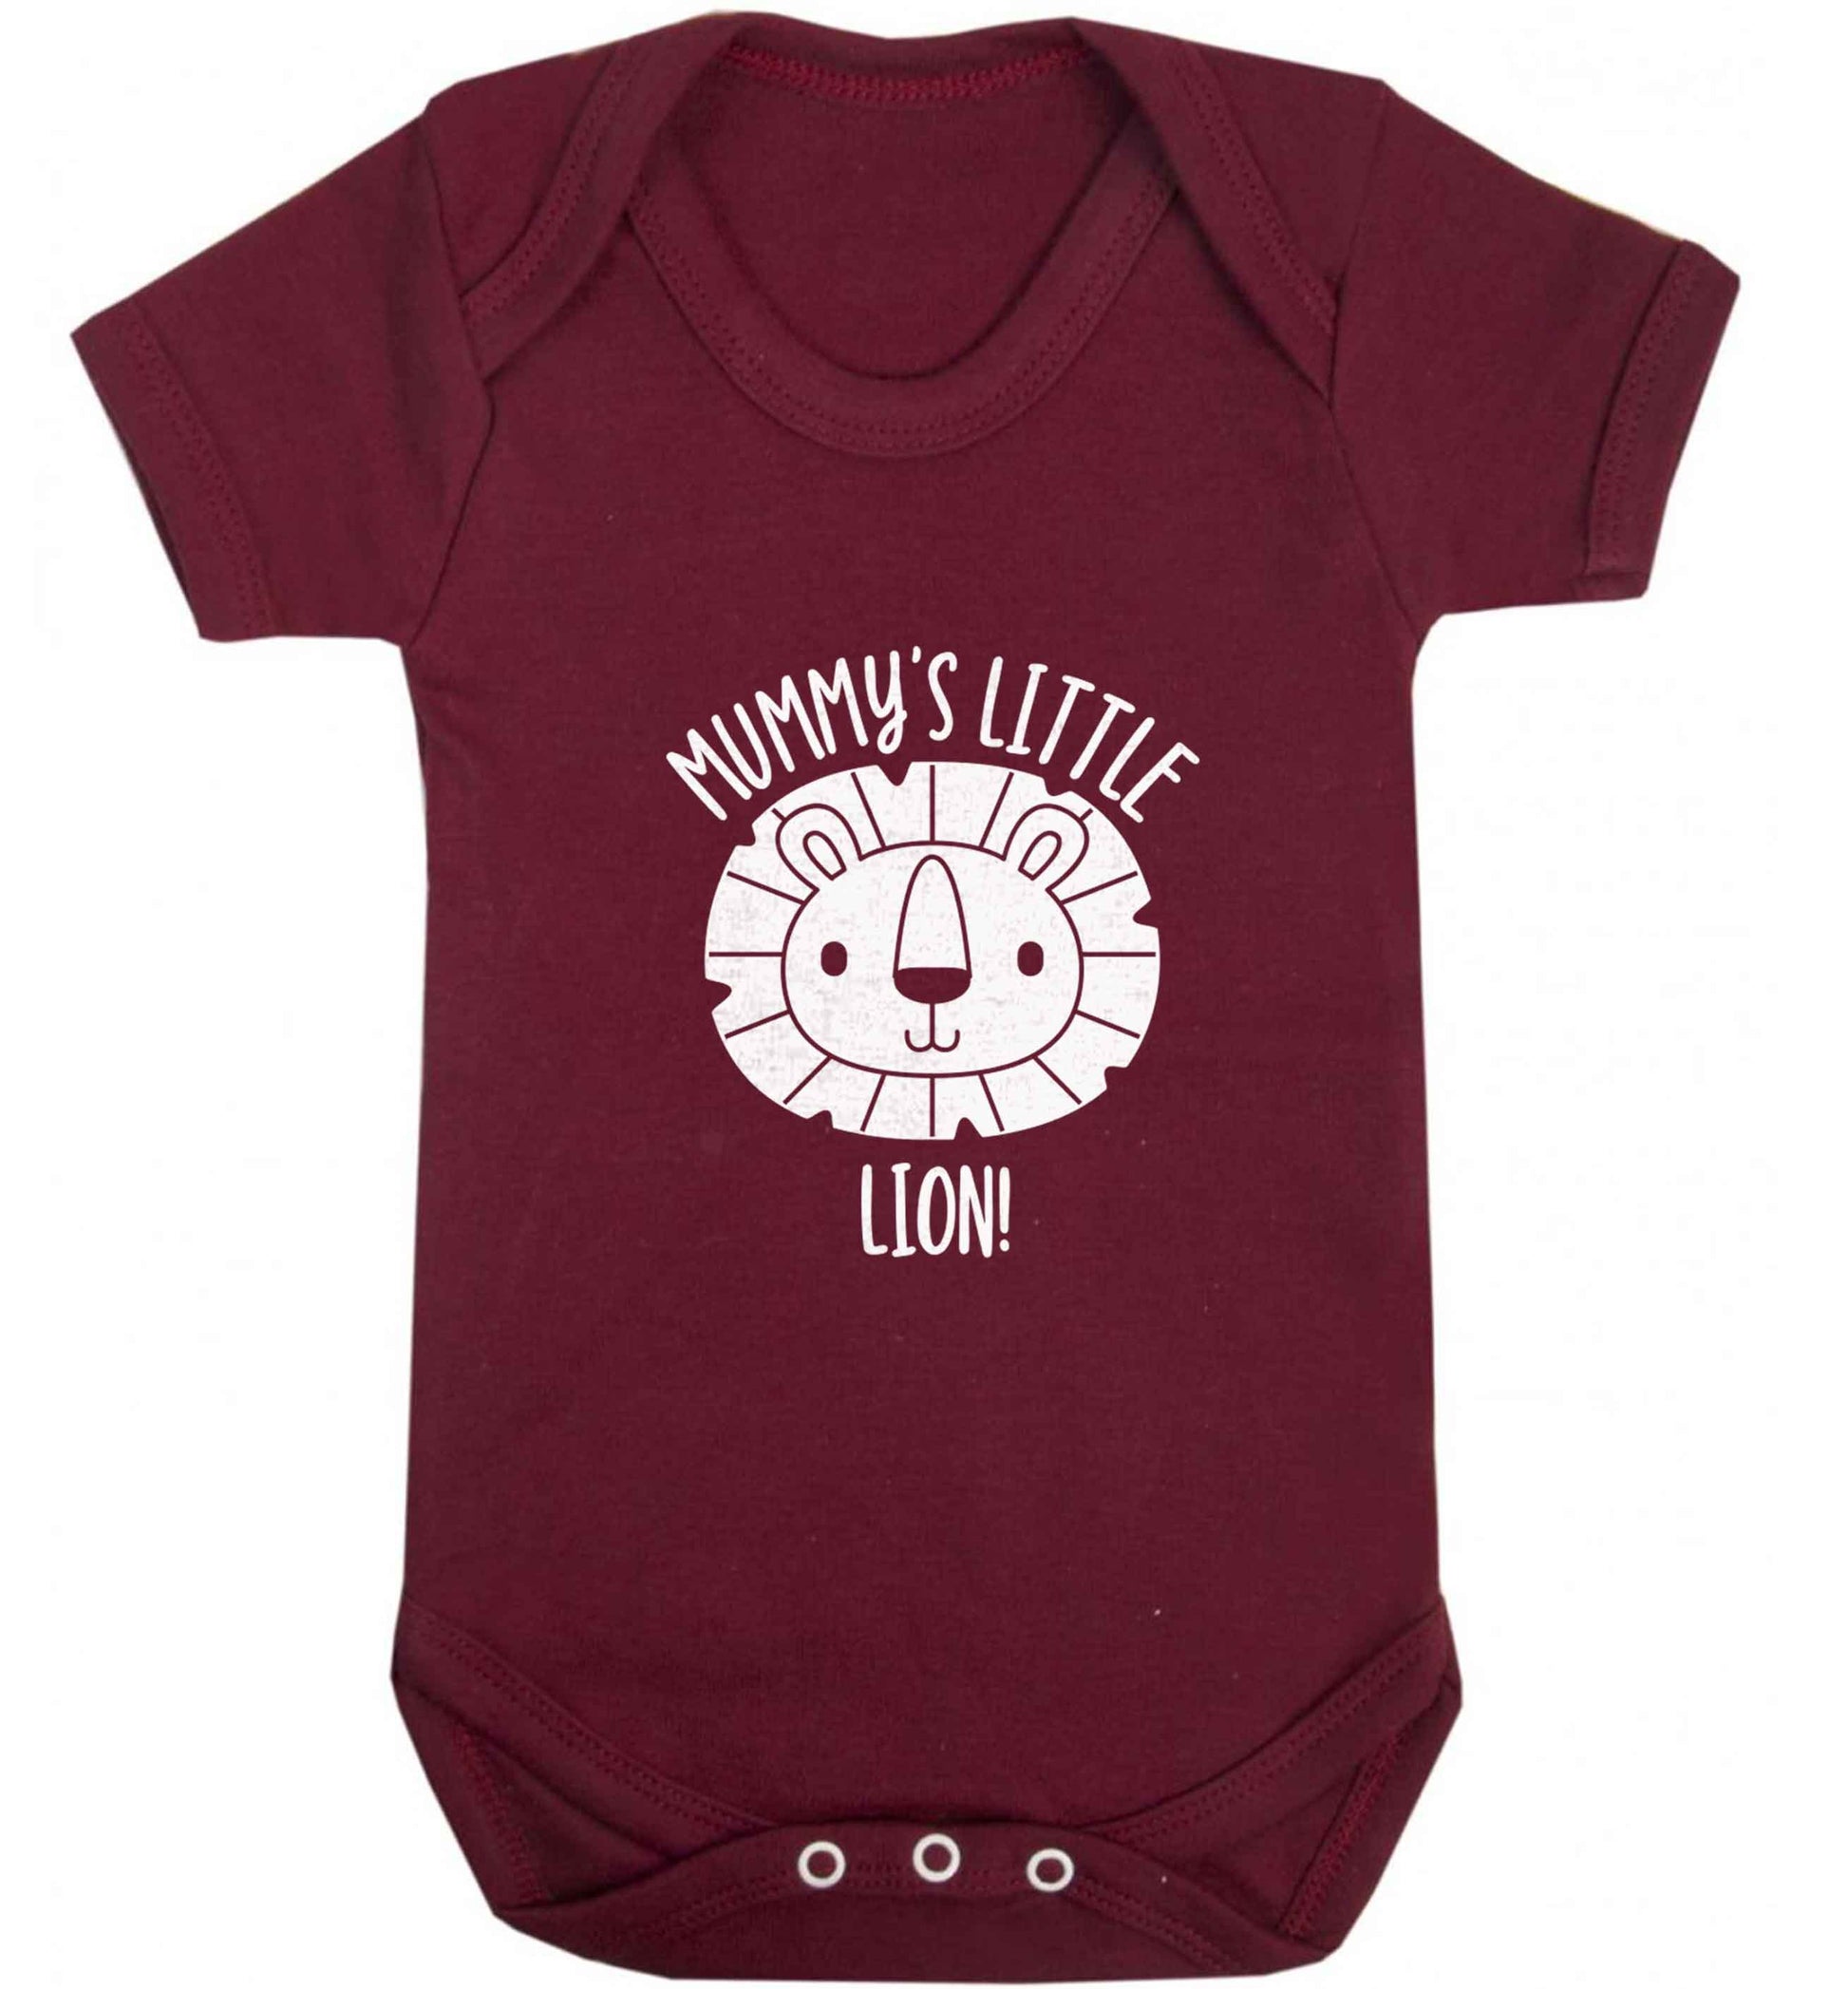 Mummy's little lion baby vest maroon 18-24 months